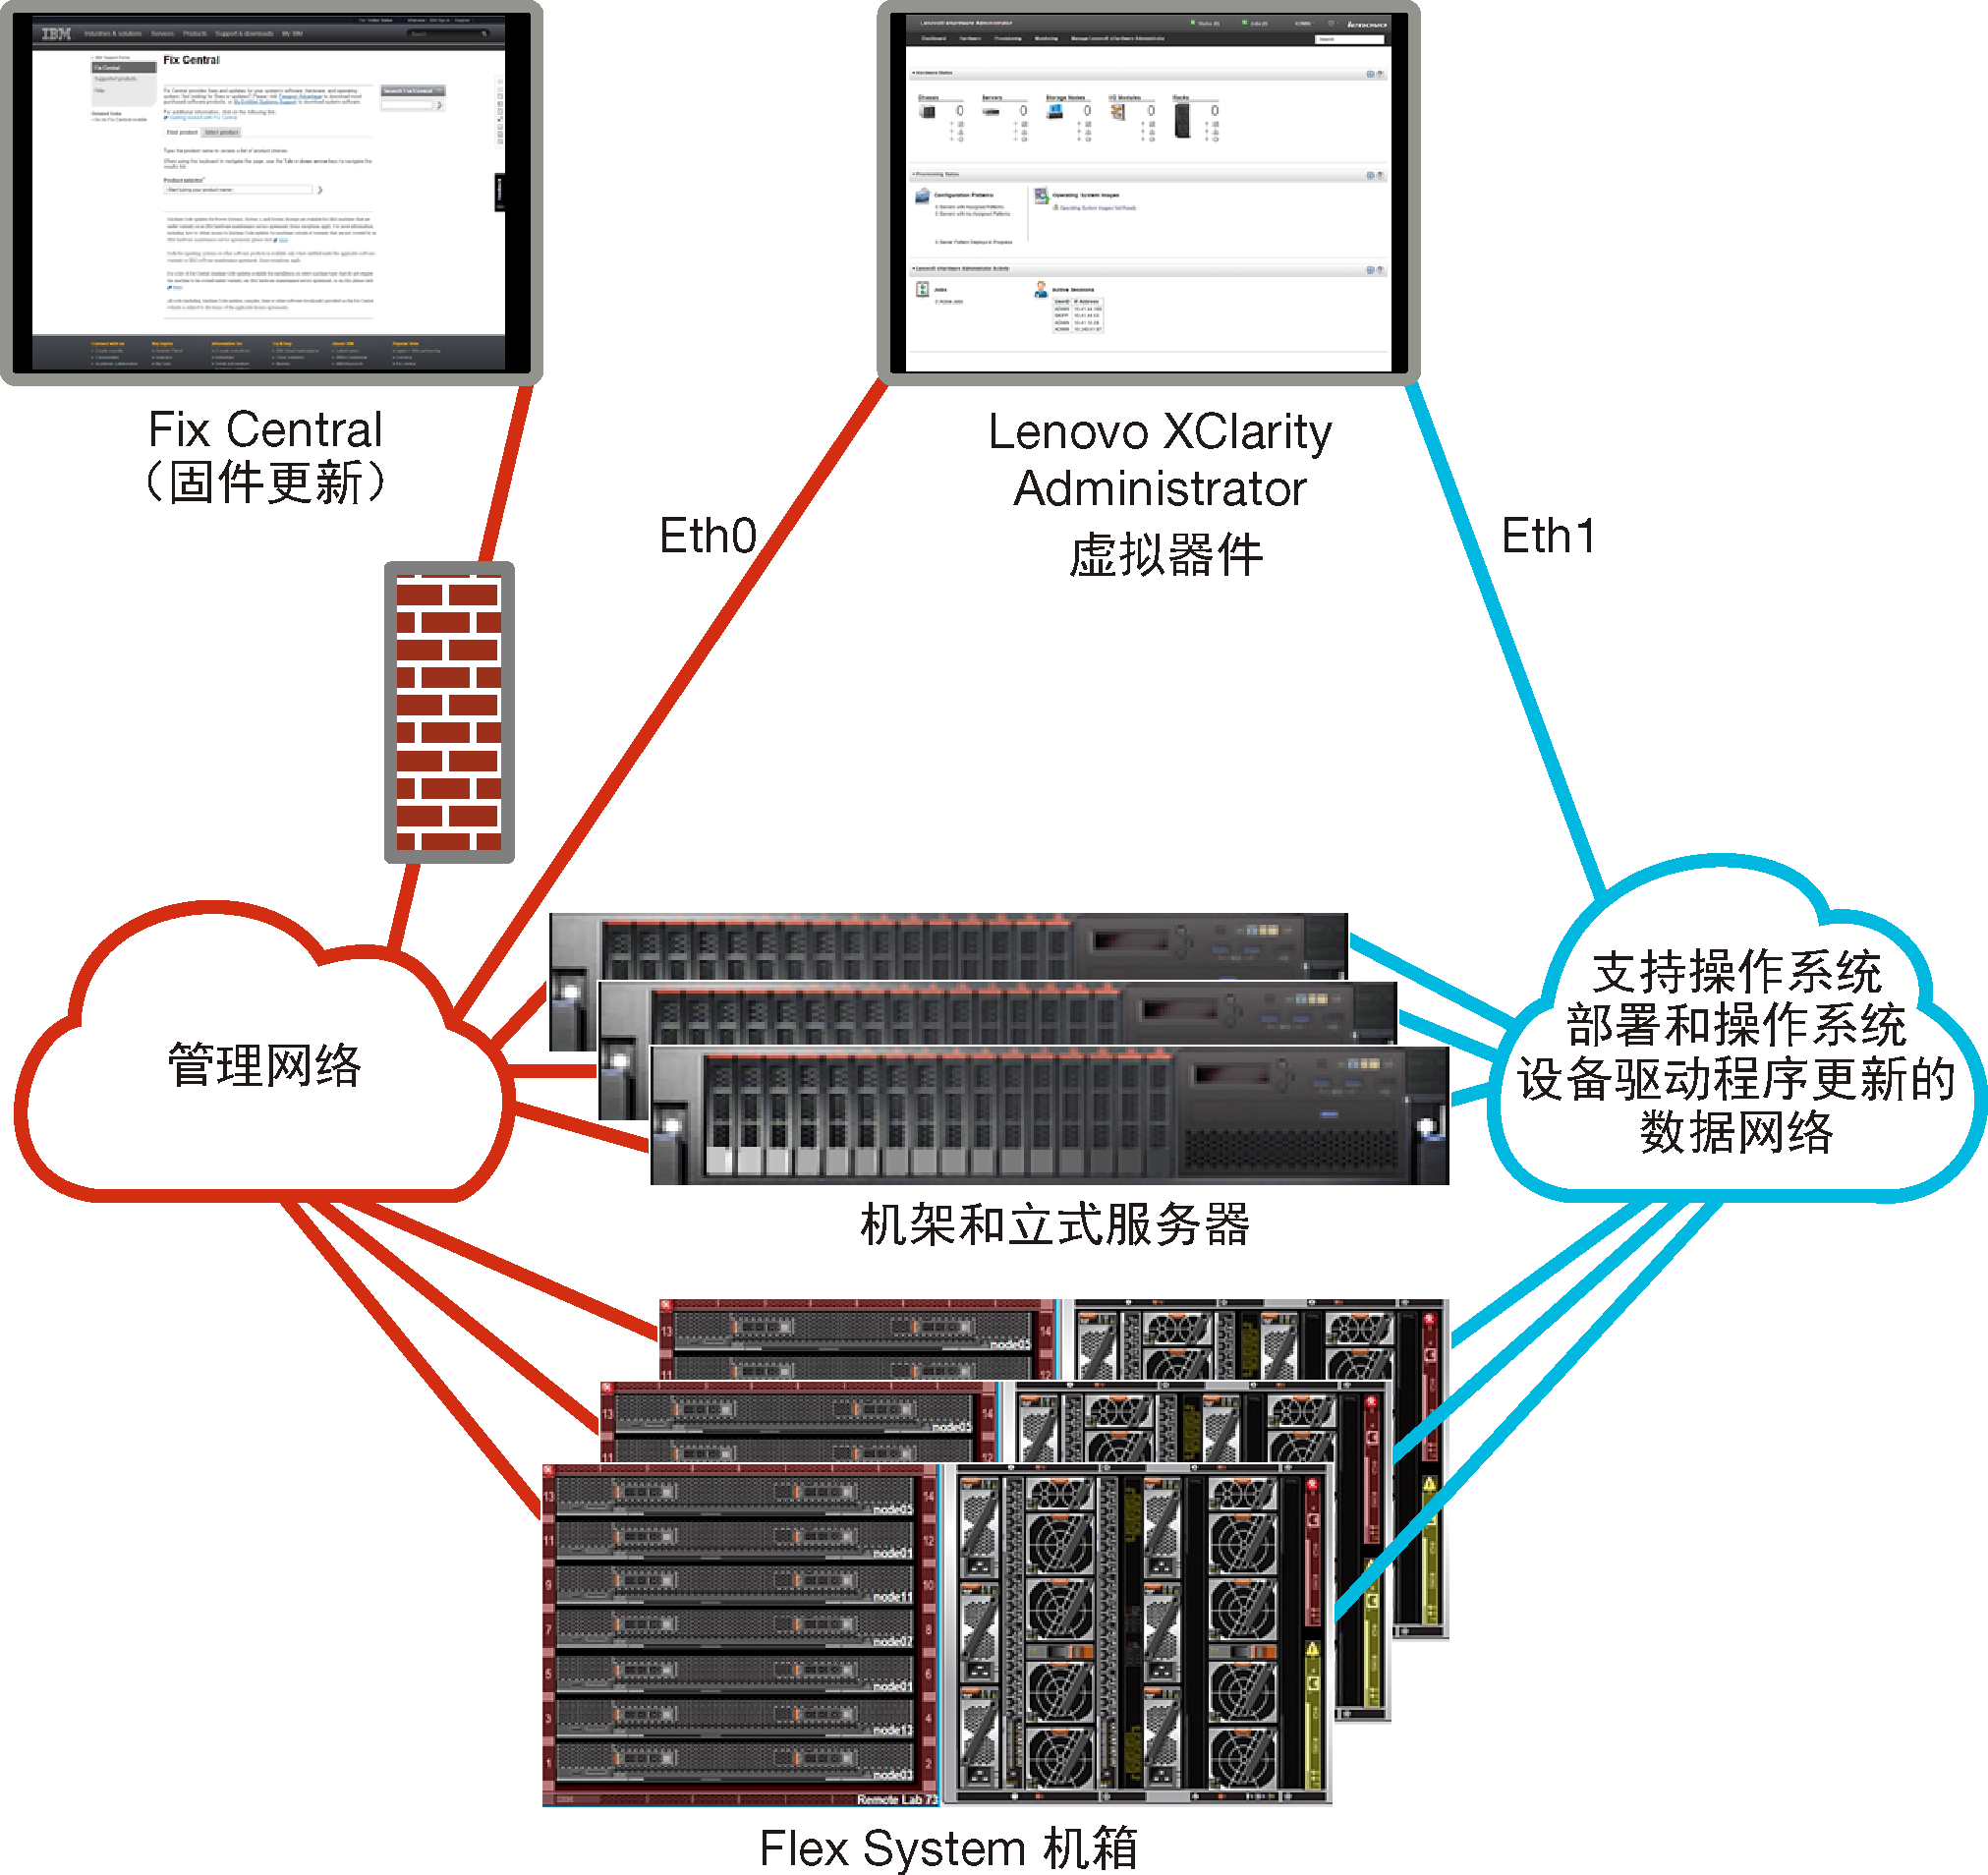 概括地显示隔离的数据和管理网络的图形。操作系统部署网络被设置为数据网络的一部分。